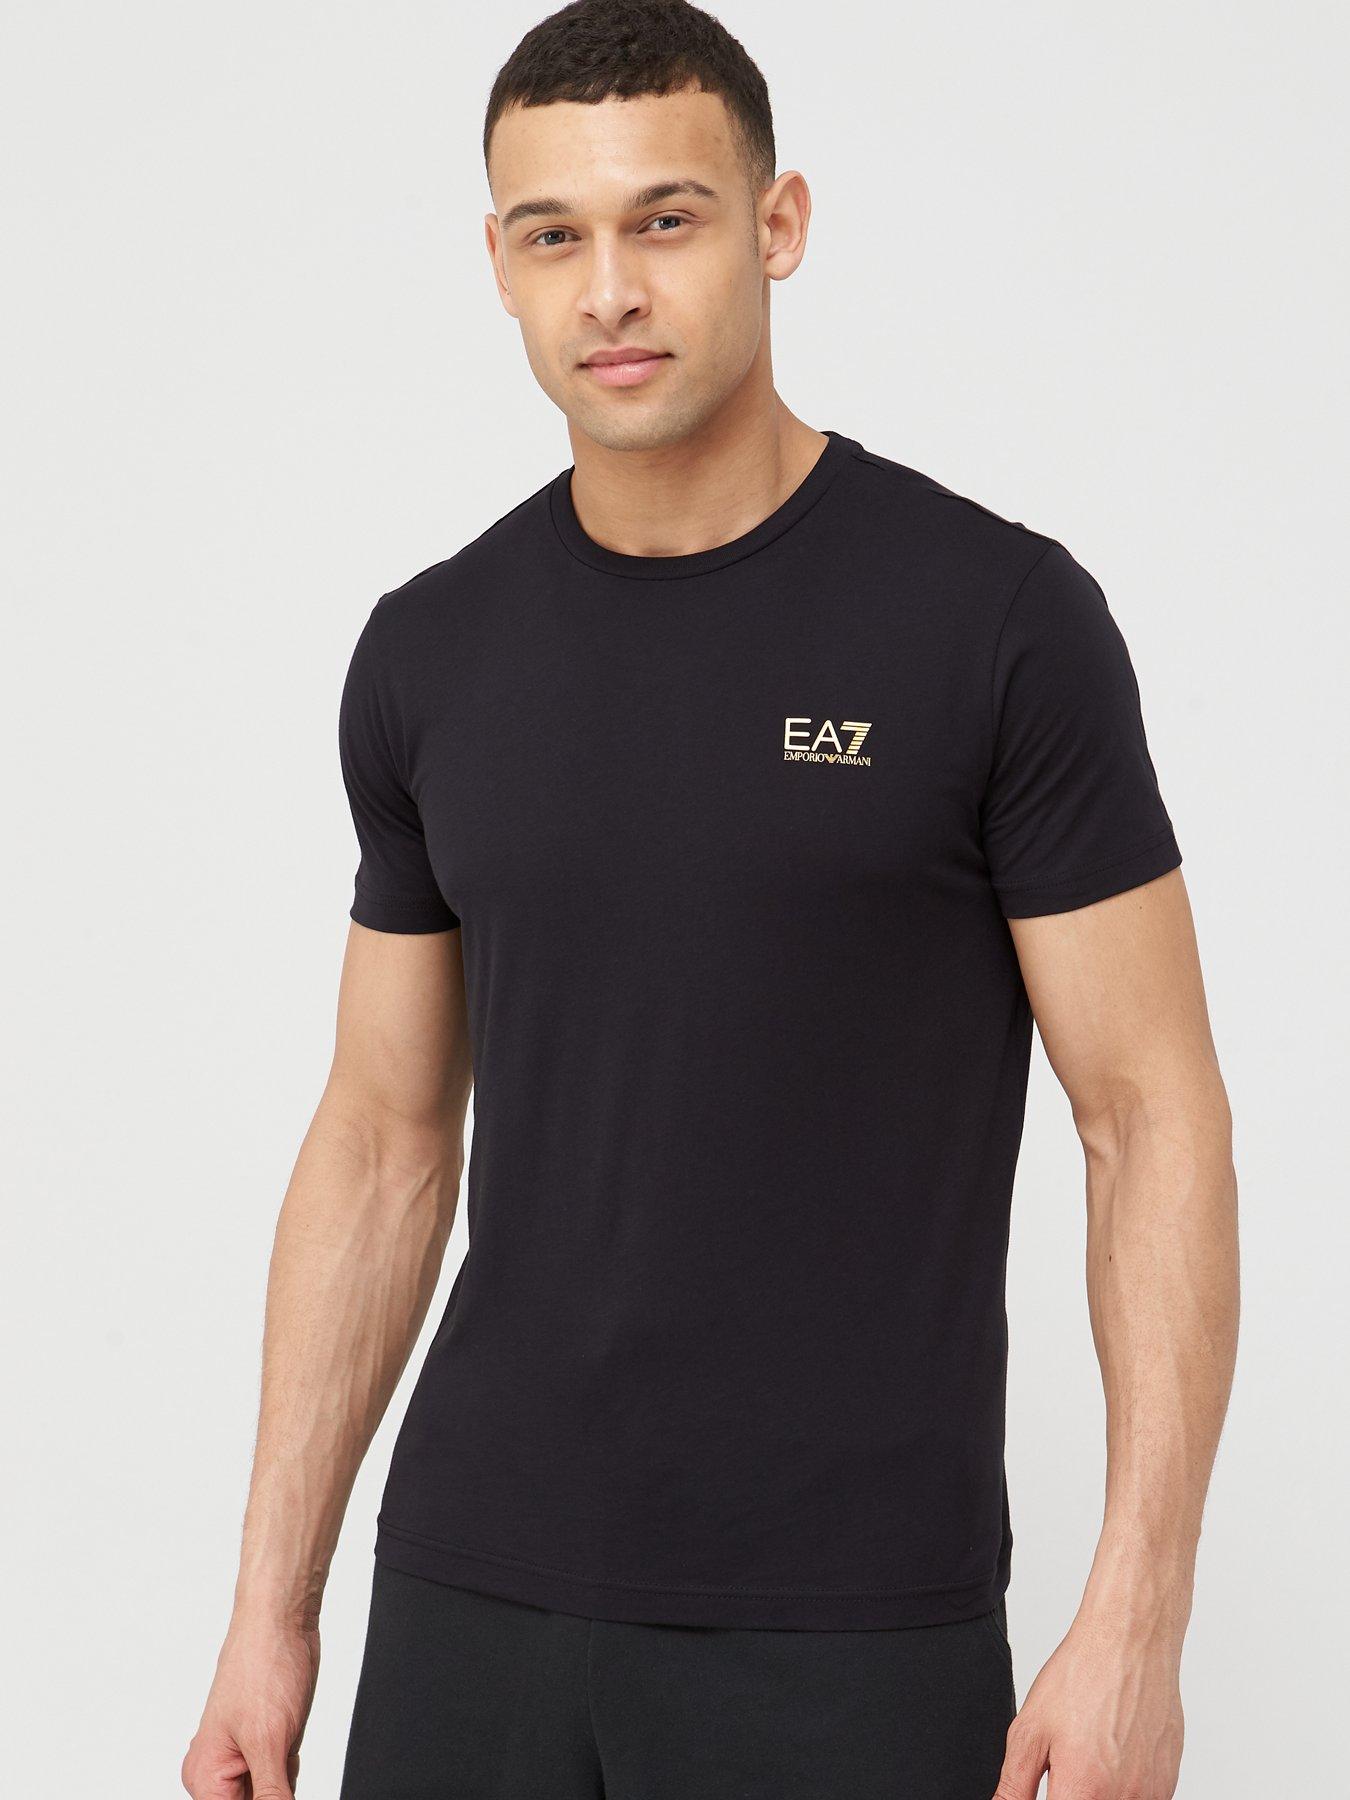 mens ea7 t shirt sale